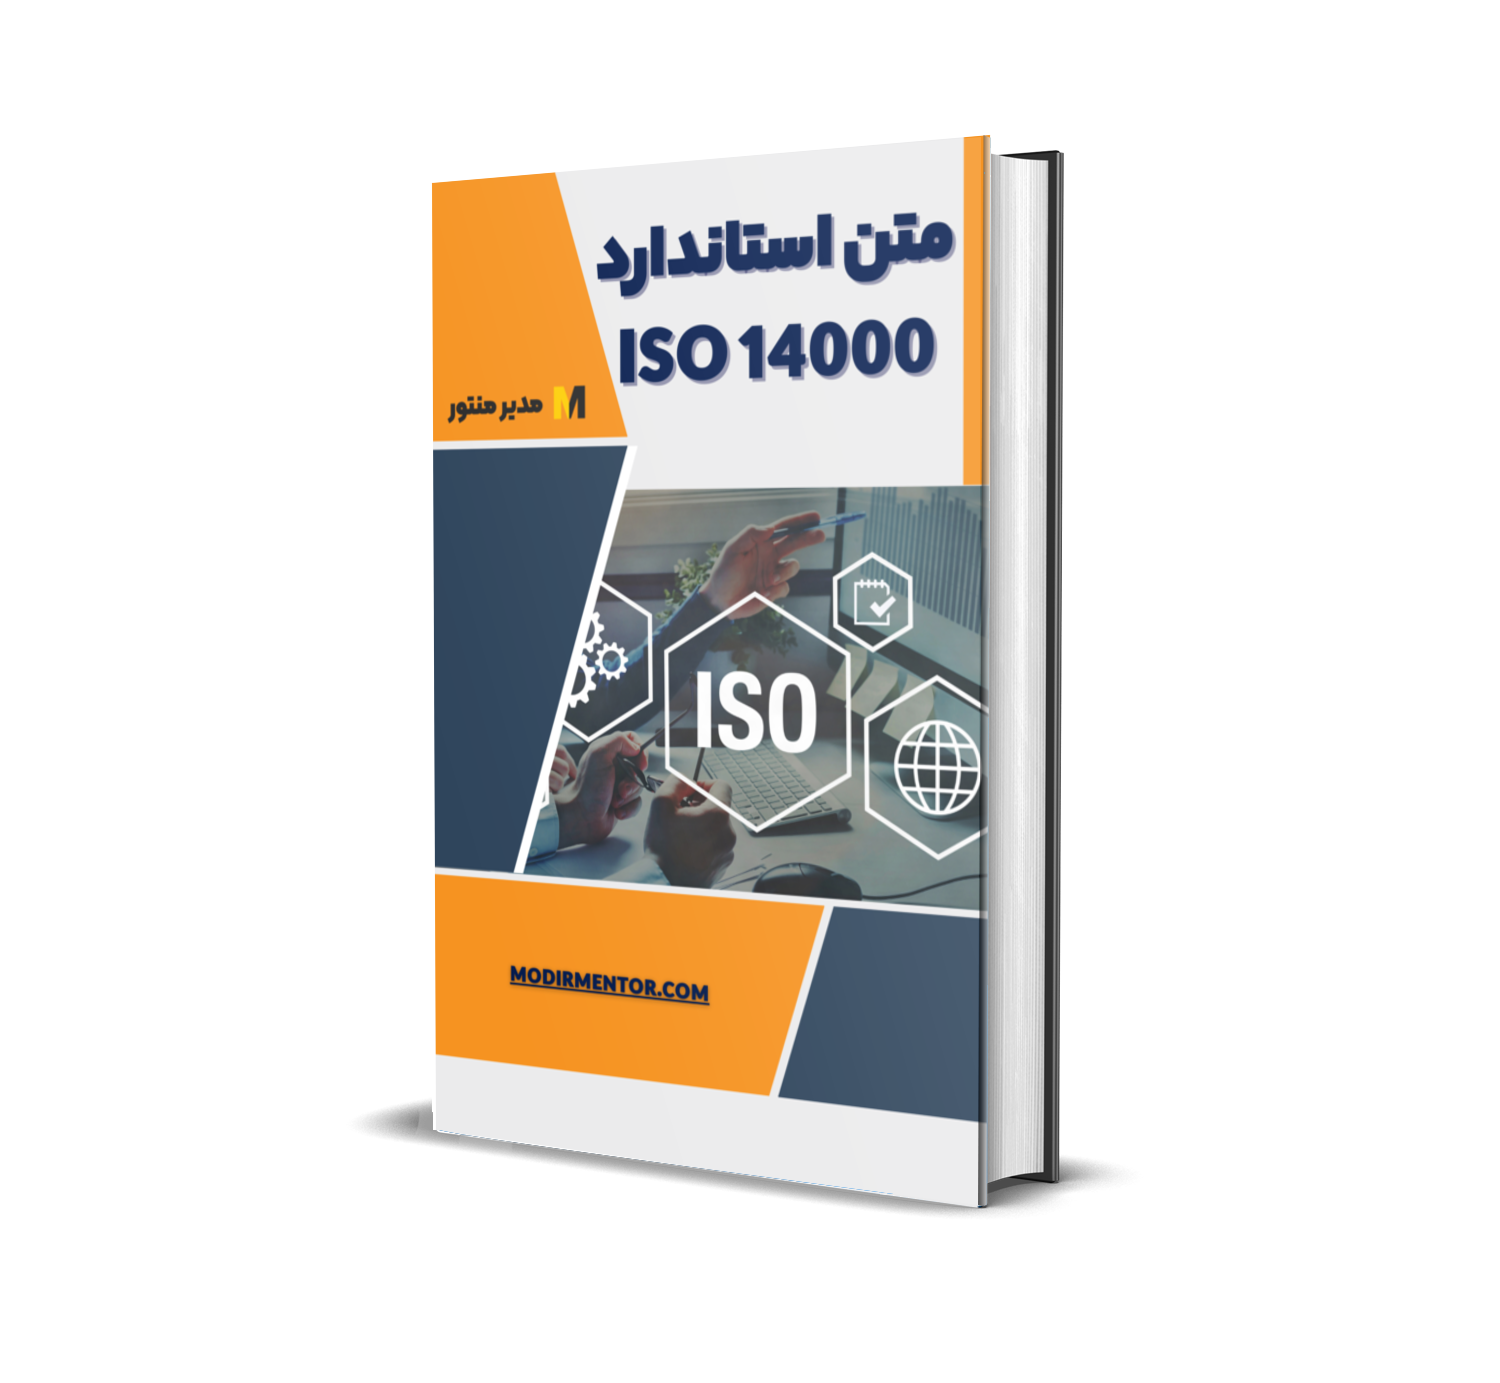 دانلود فایل متن استاندارد iso 14000